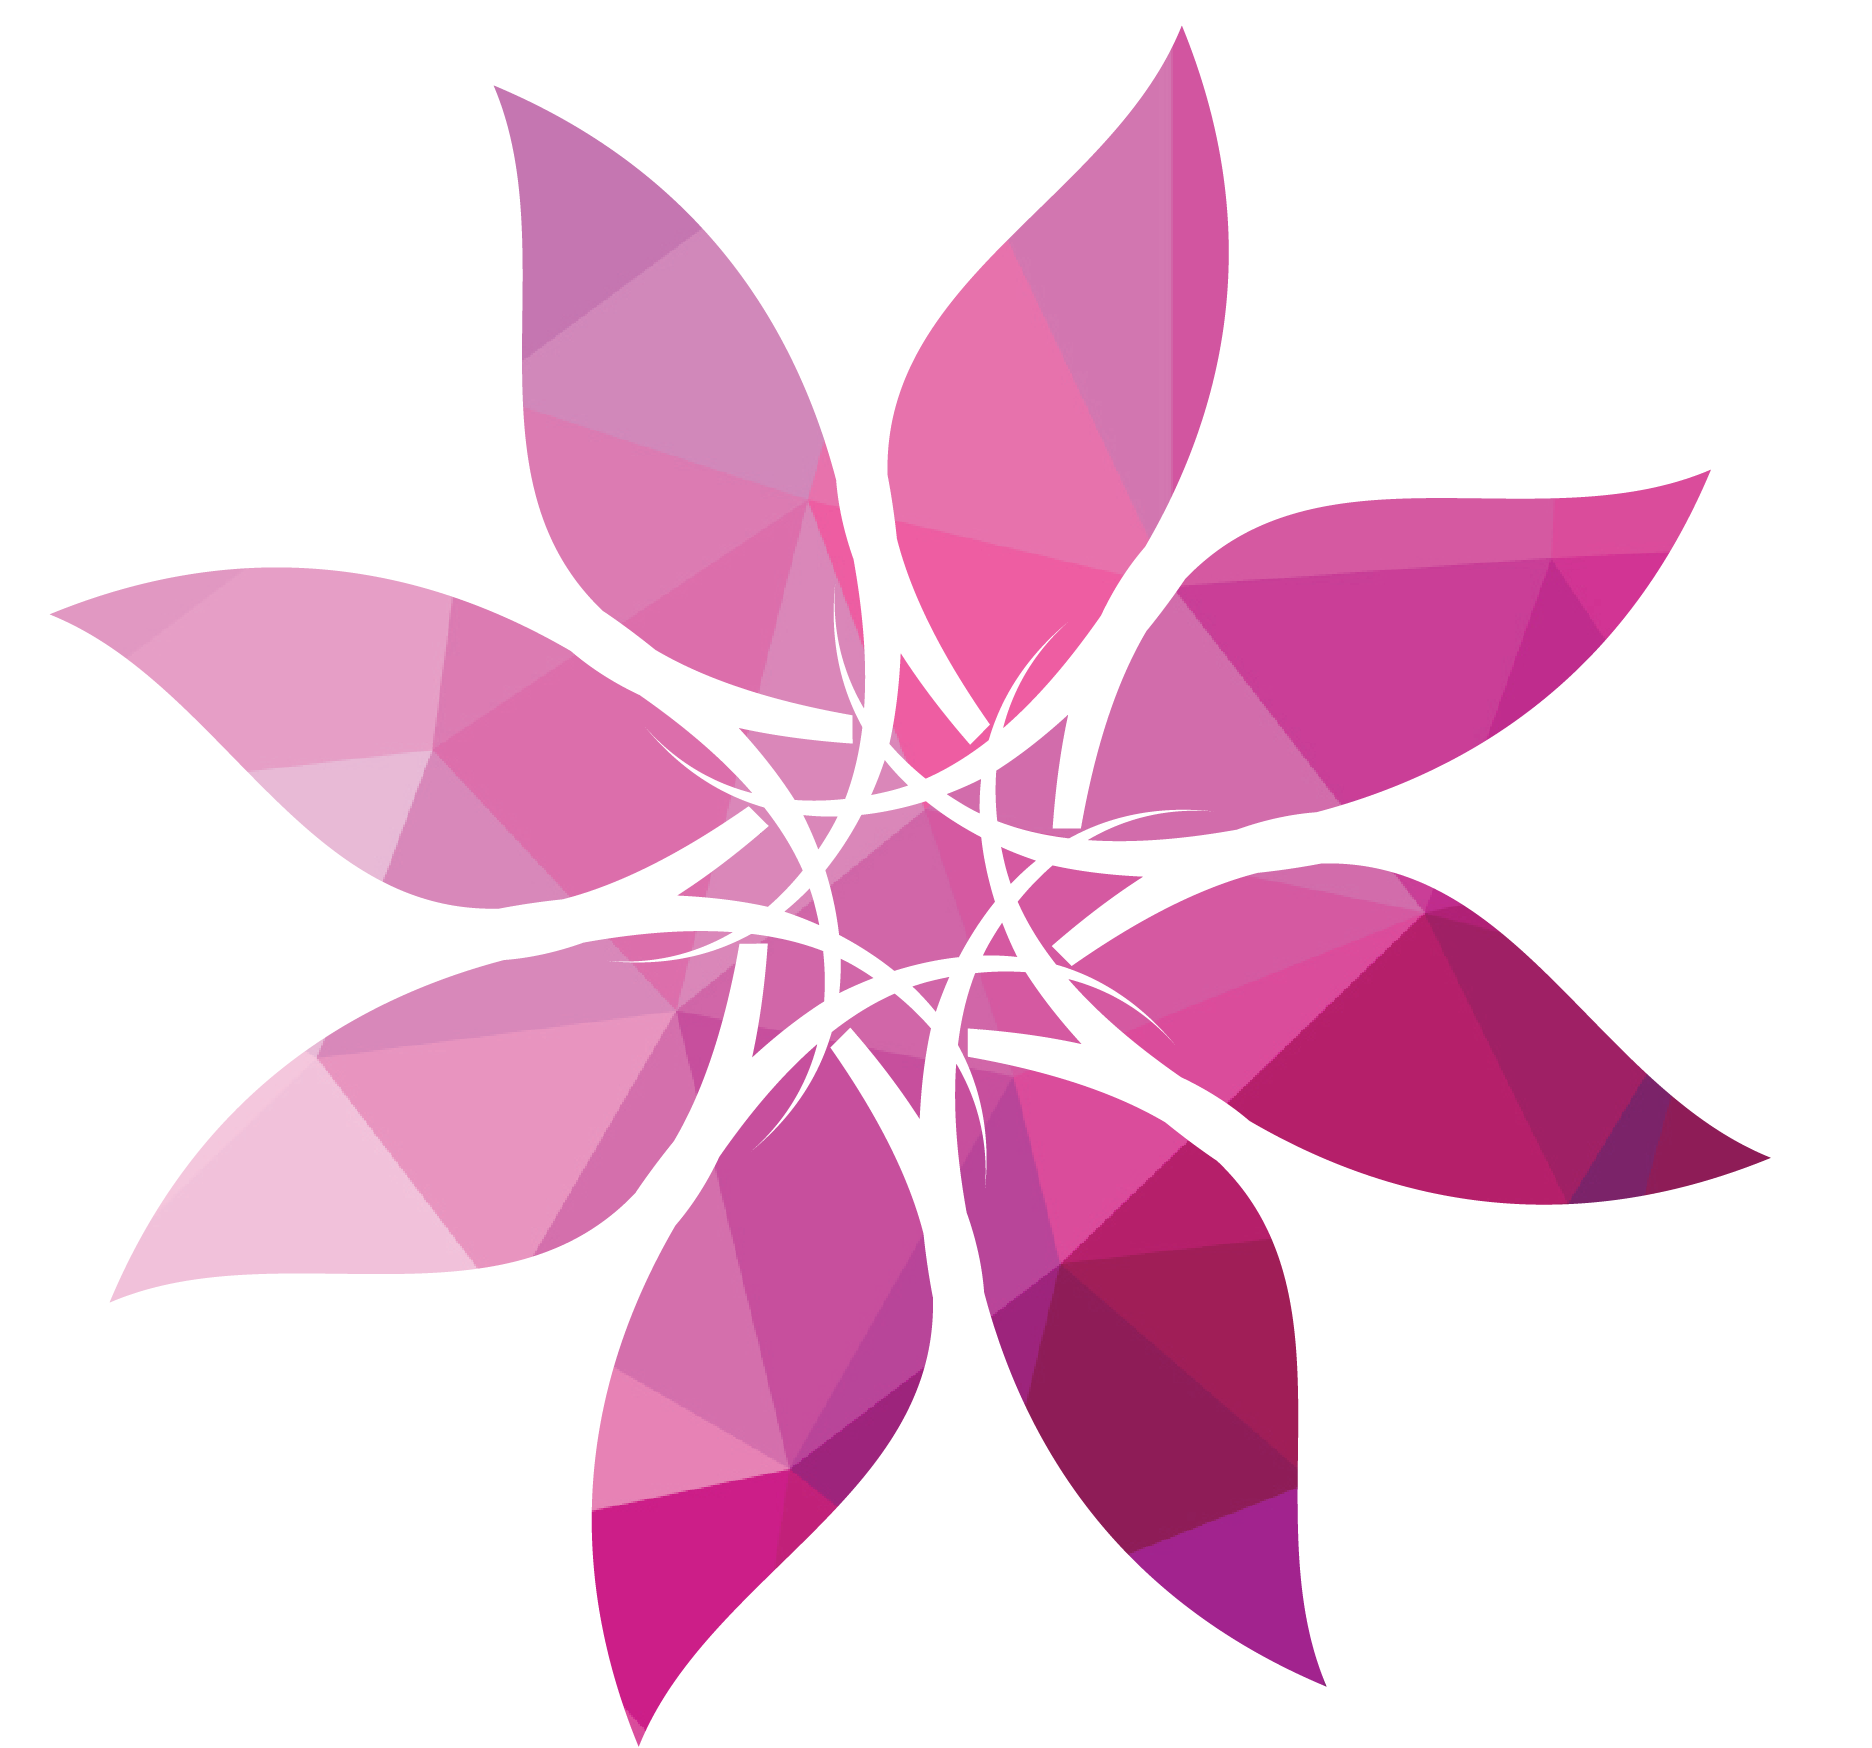 Women's ministry logo FLOWER